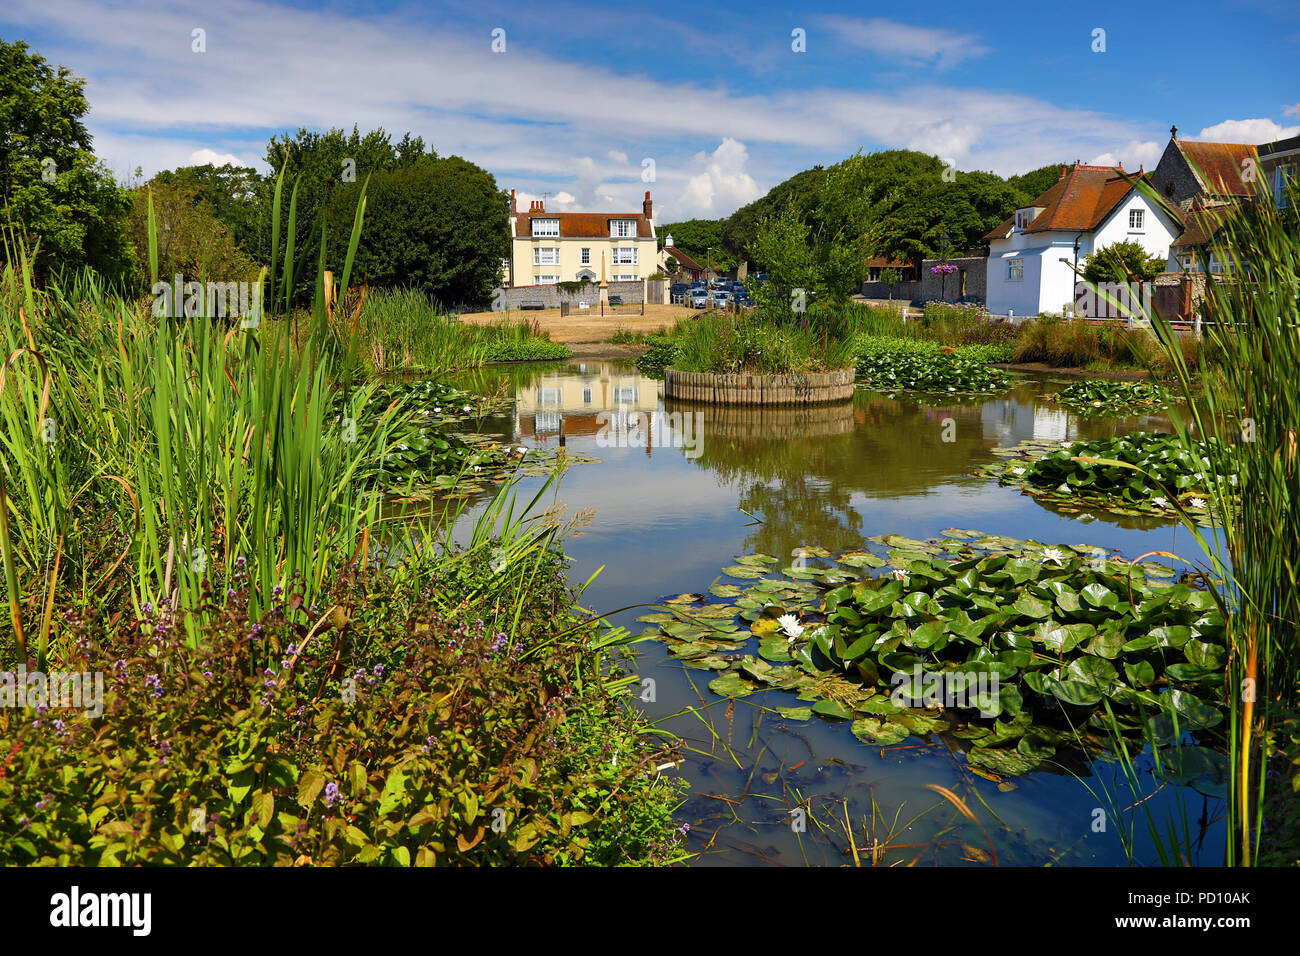 Das Dorf Teich und die Ulmen, wo Rudyard Kipling lebte, in der Ortschaft Rottingdean, East Sussex, England, Vereinigtes Königreich Stockfoto